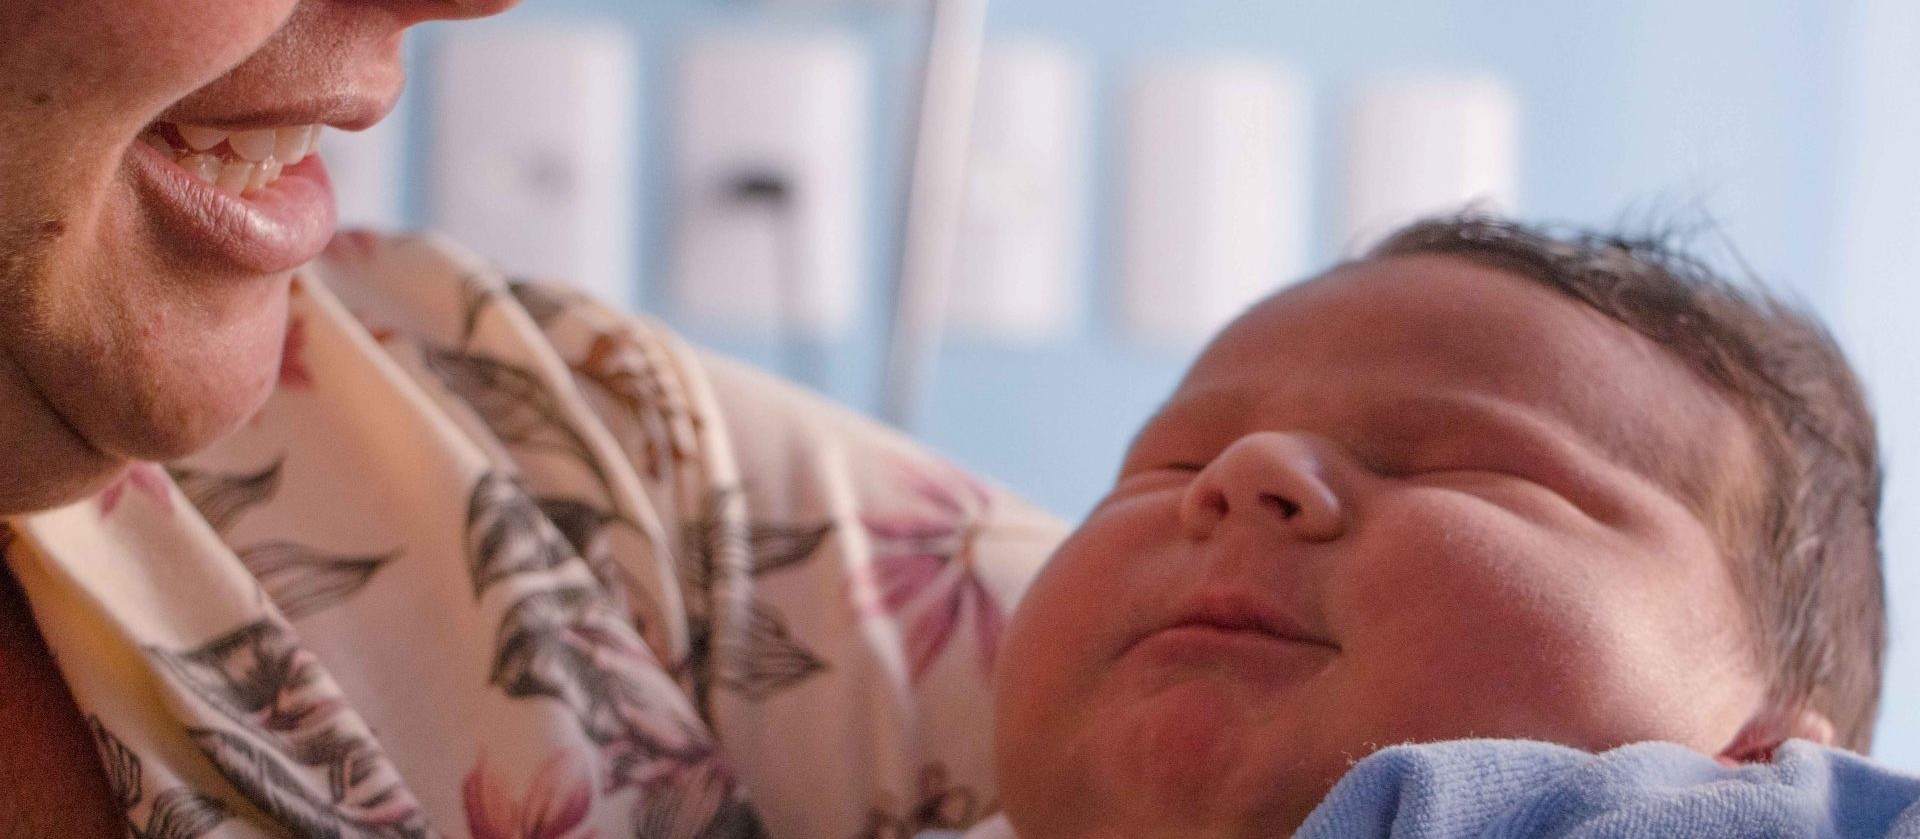 Nasce bebê de 4 quilos e 800 gramas na cidade de Ponta grossa